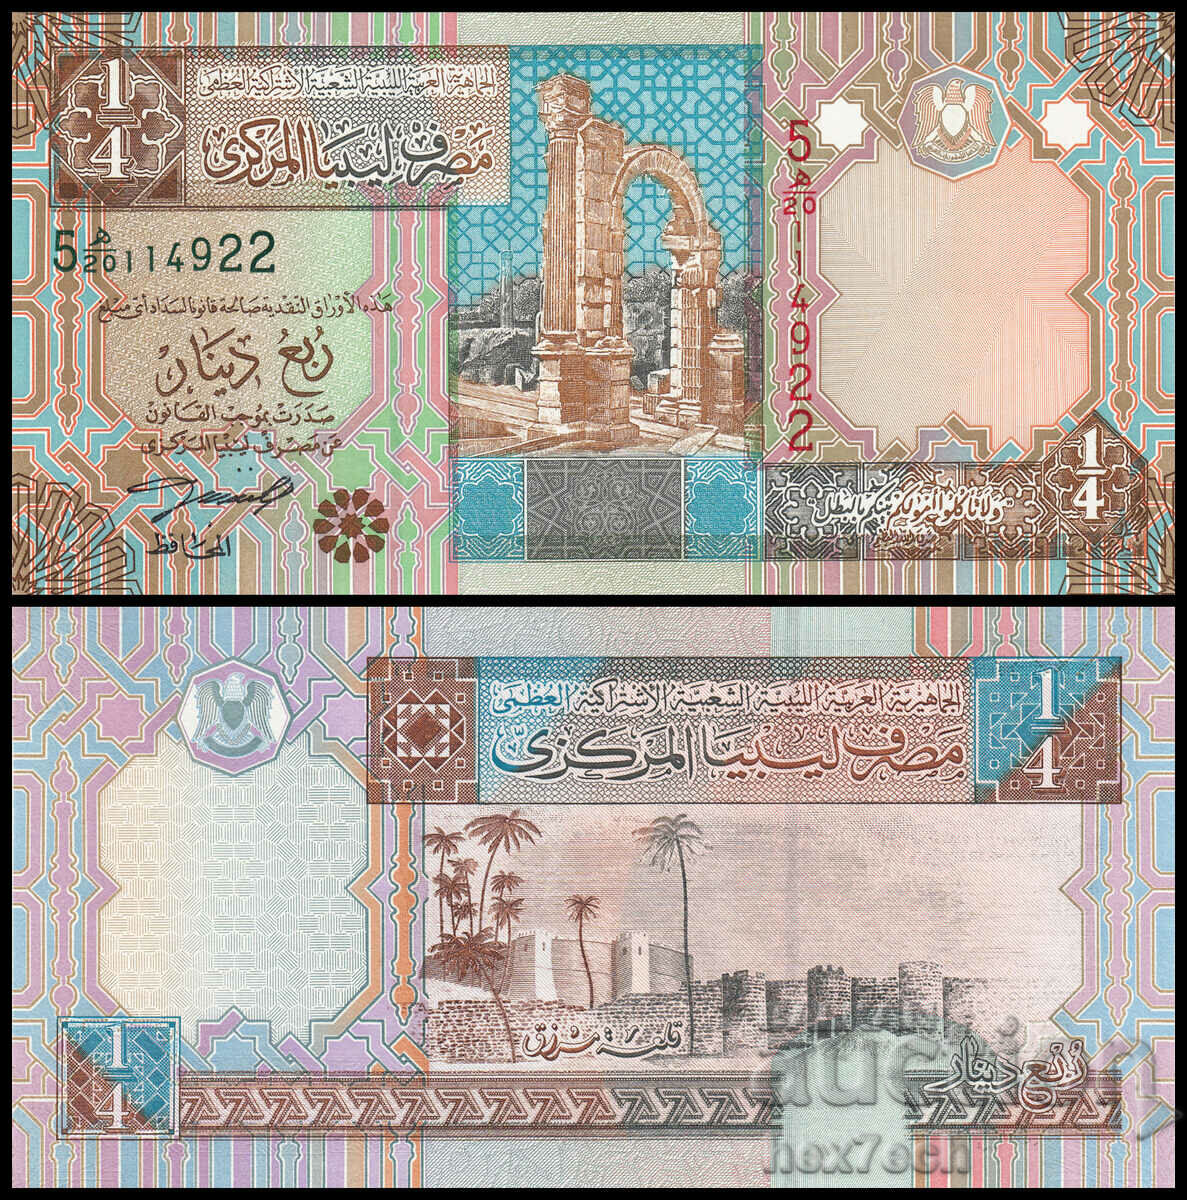 ❤️ ⭐ Libya 2002 1/4 dinar UNC new ⭐ ❤️